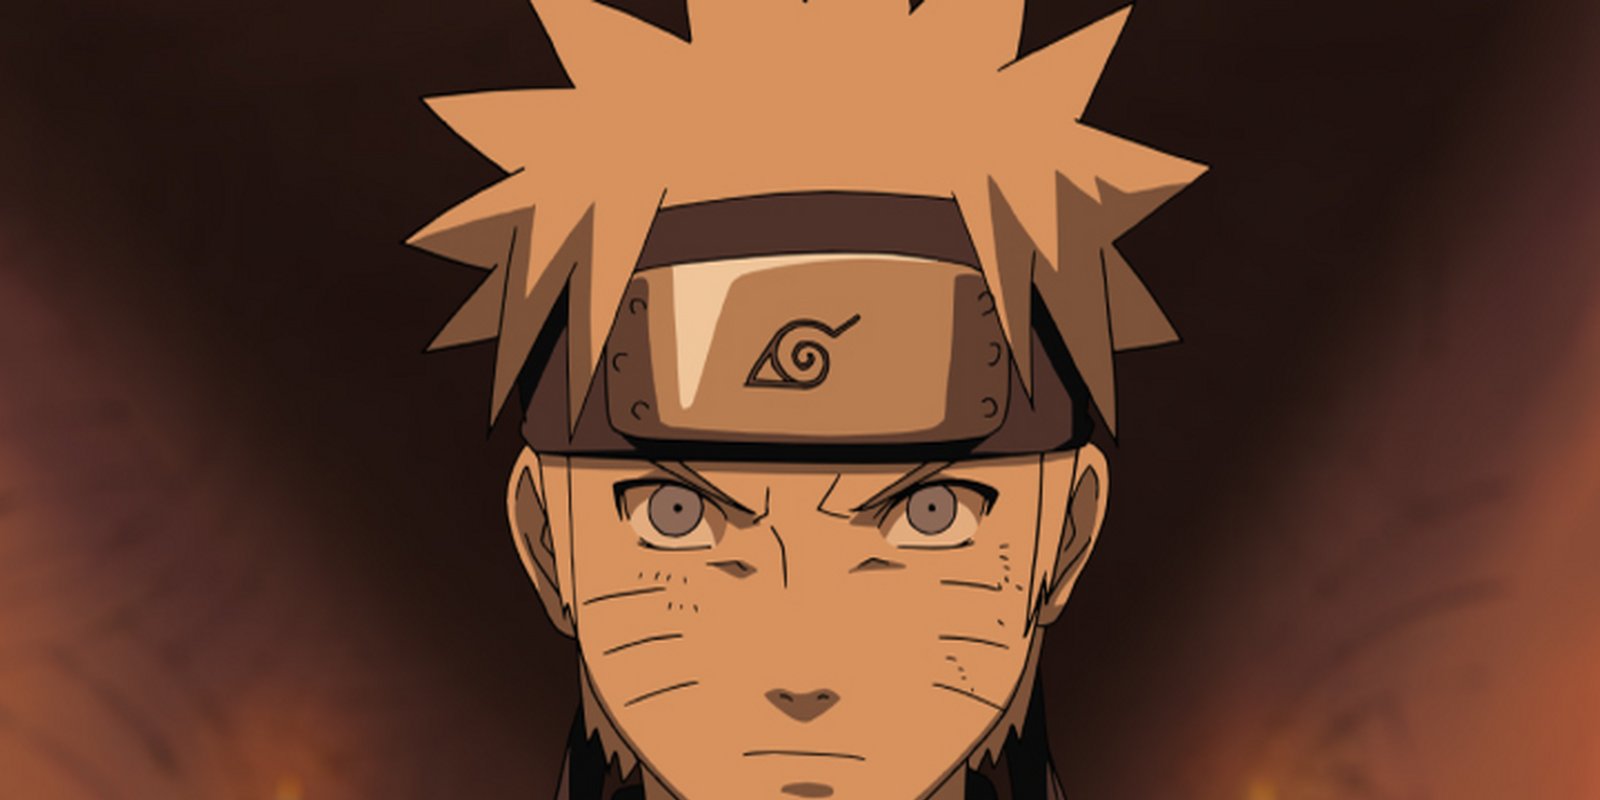 Naruto Shippuden - Staffel 2